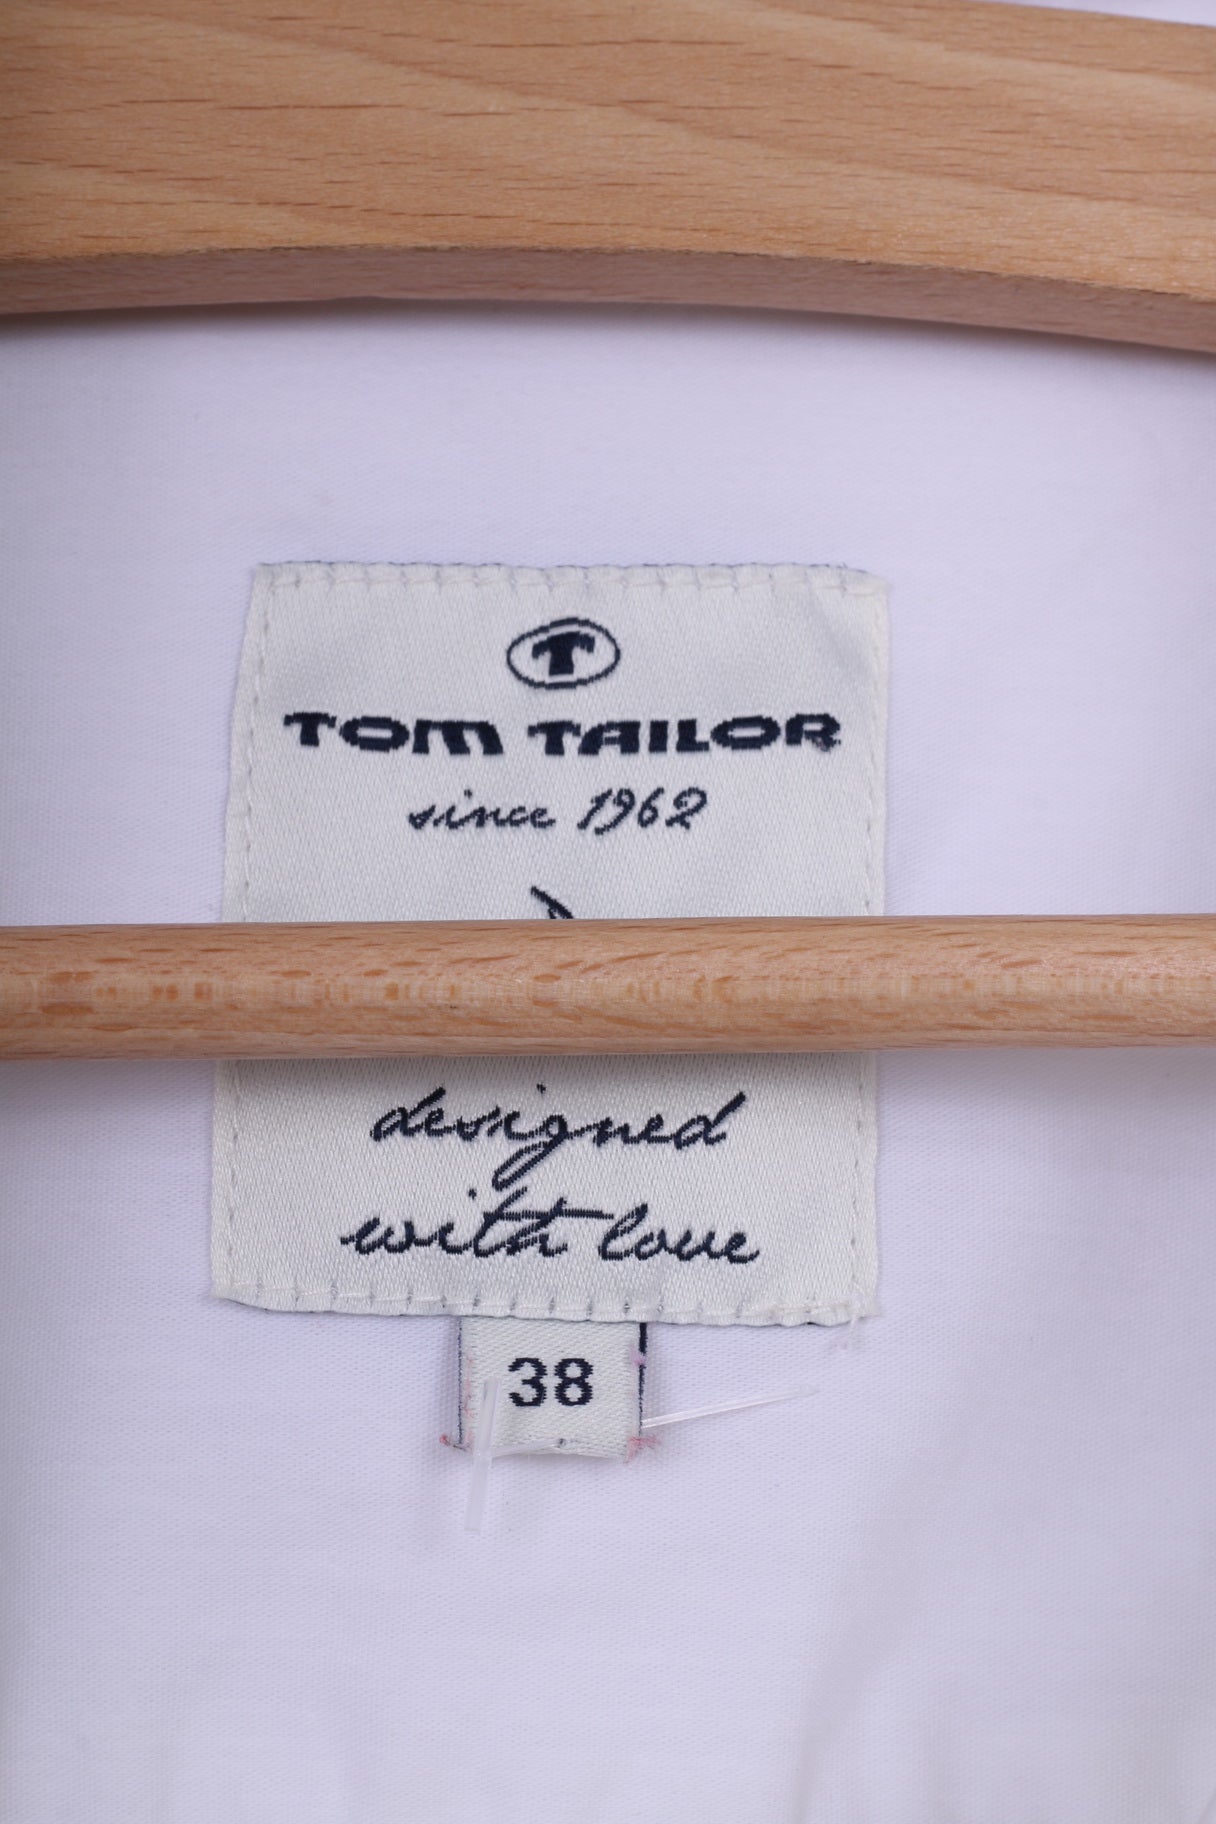 Tom Tailor Chemisier décontracté M 38 Femme Blanc Manches Longues Coton 